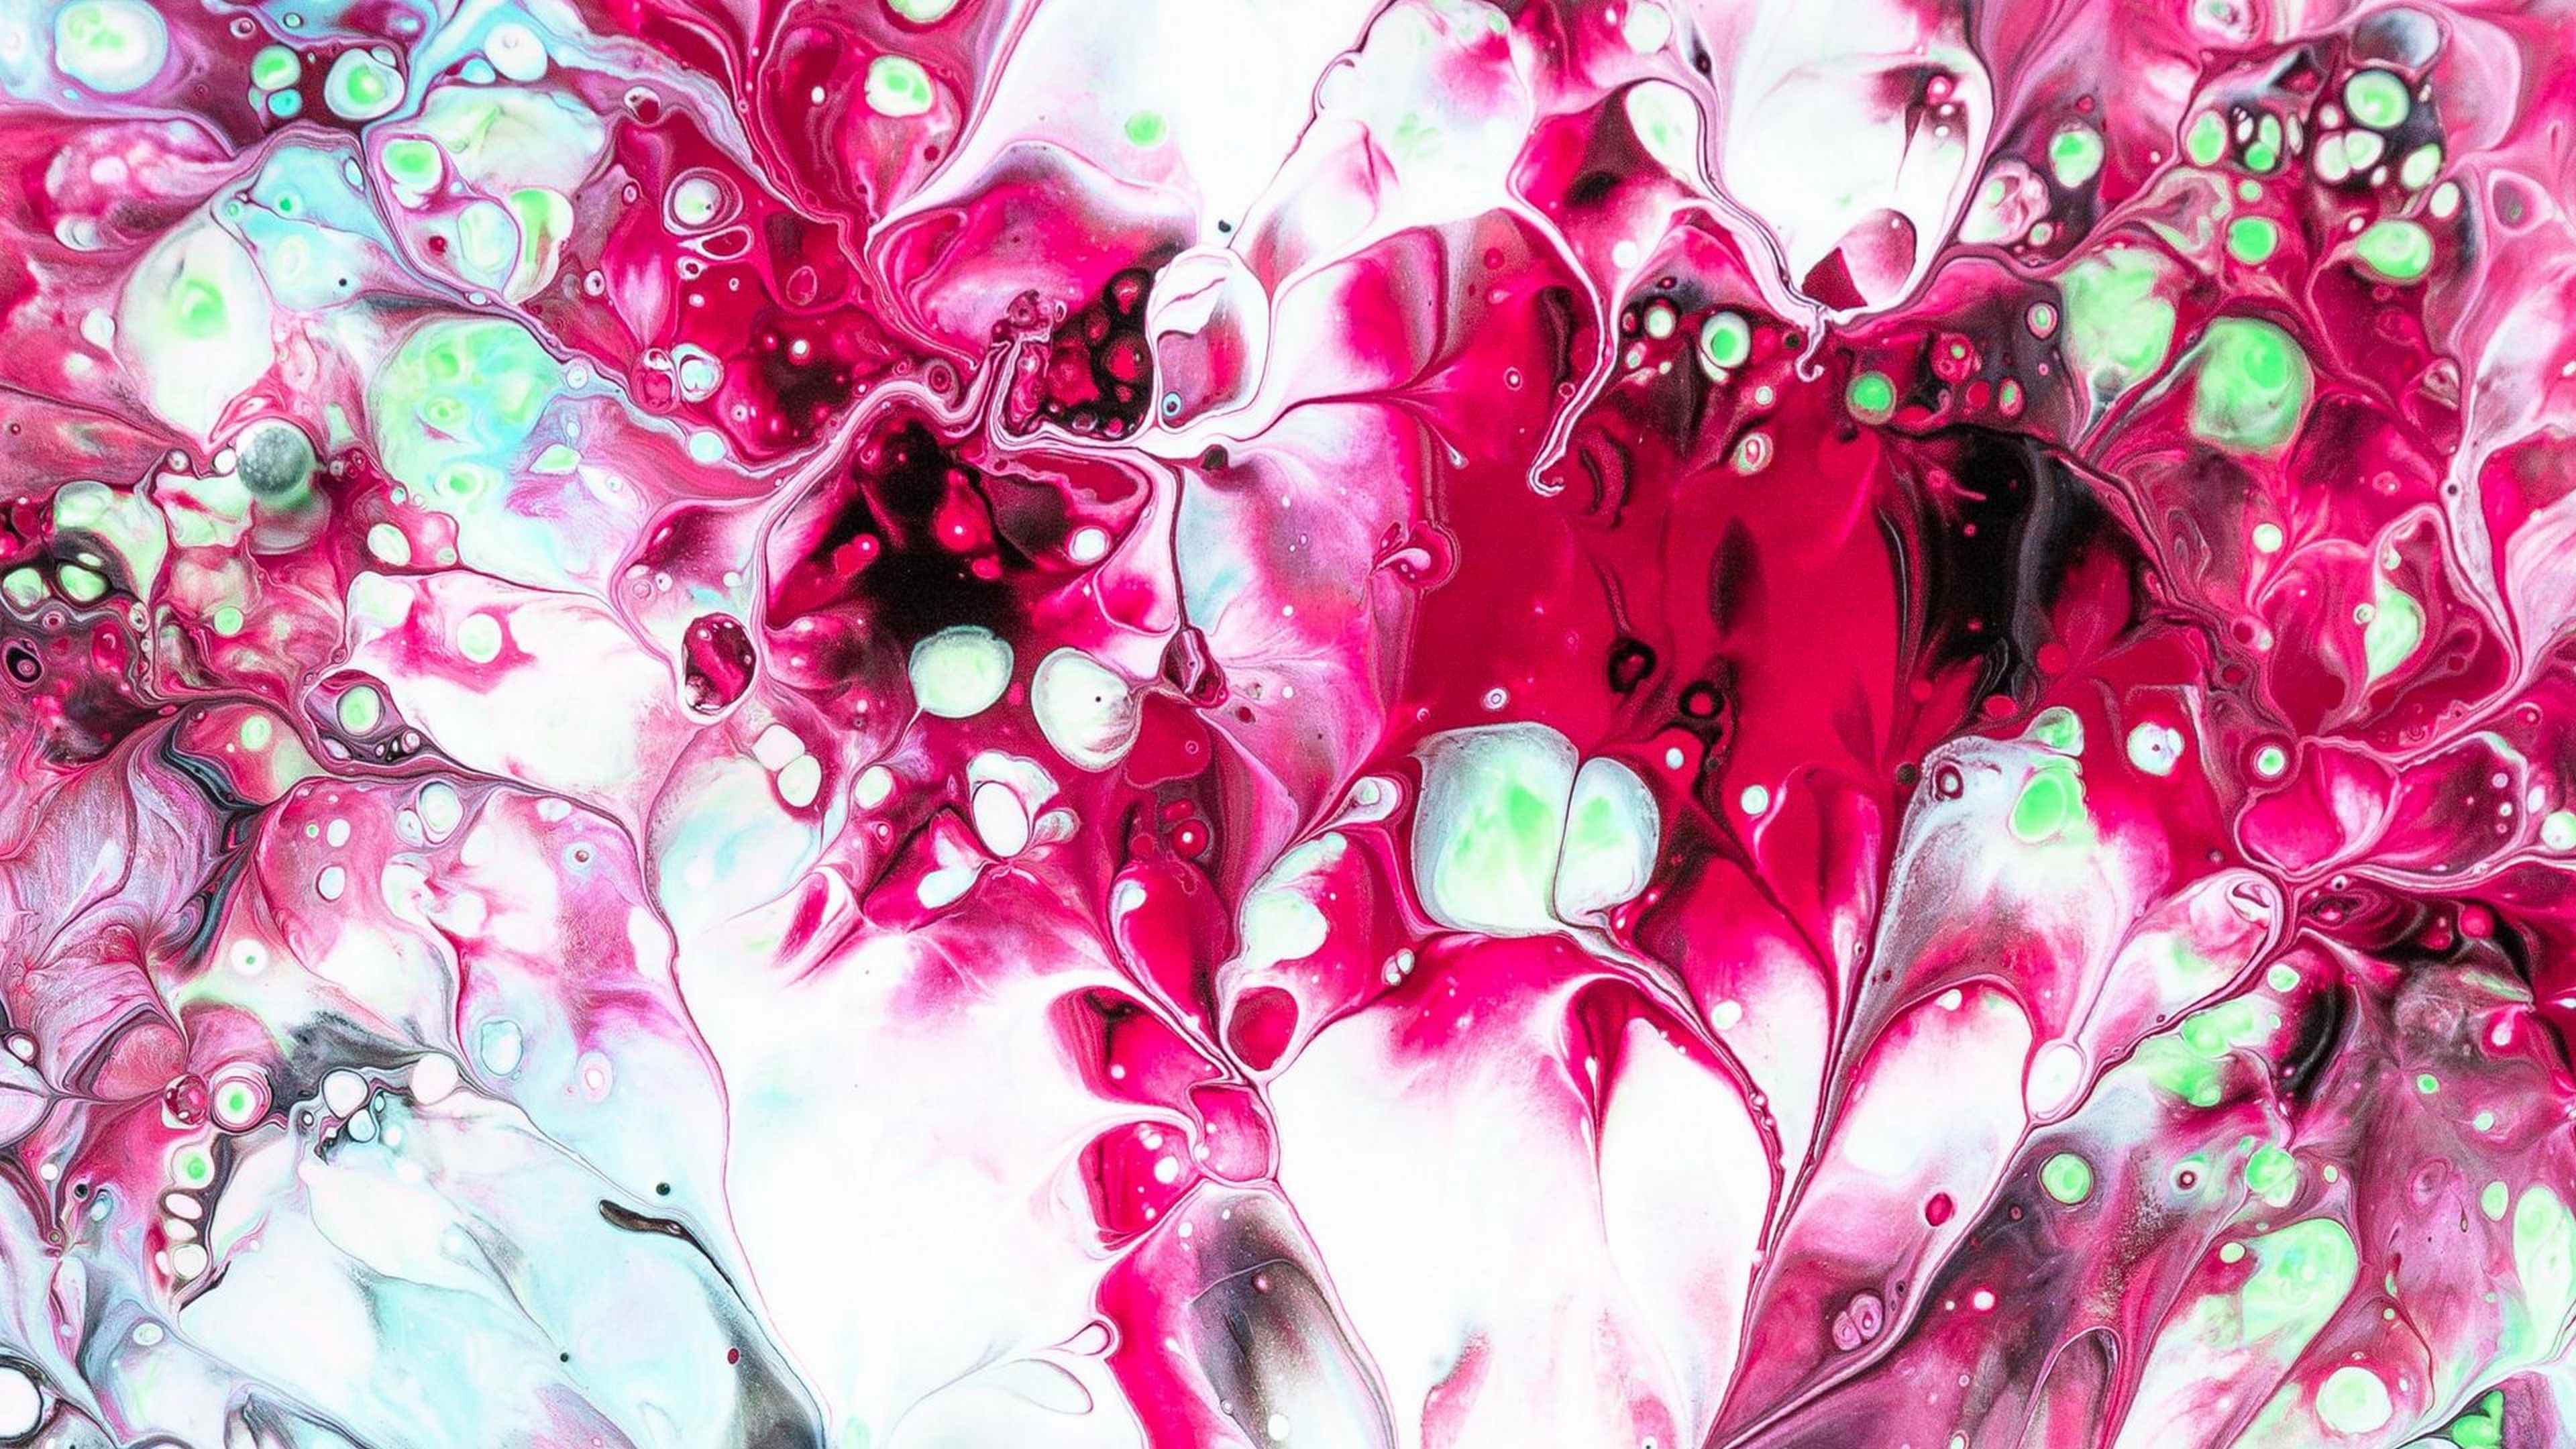 Обои 16 10. Картина флюид арт. Абстракция жидкость. Креативные картины красками. Флюид арт розовый.